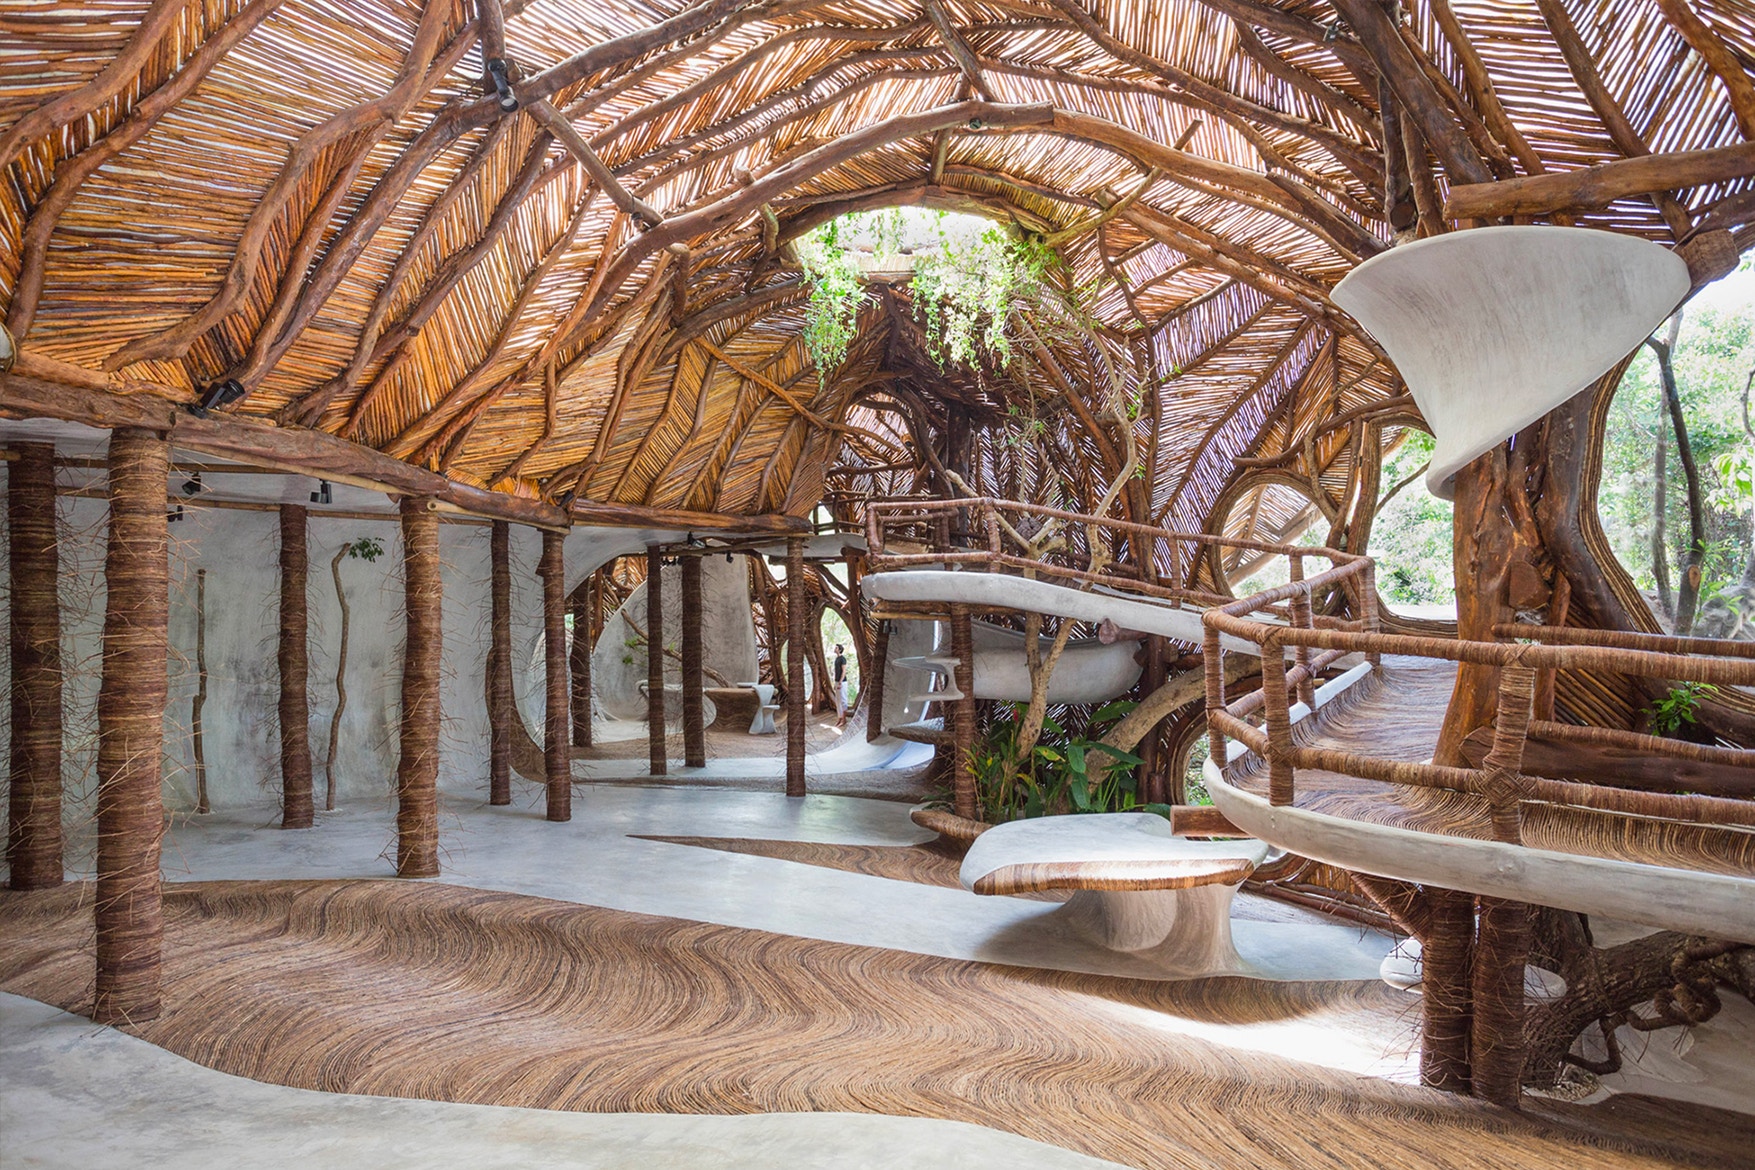 Правнук Пегги Гуггенхайм открыл арт-галерею, похожую на шикарный дом в дереве (фото 2)